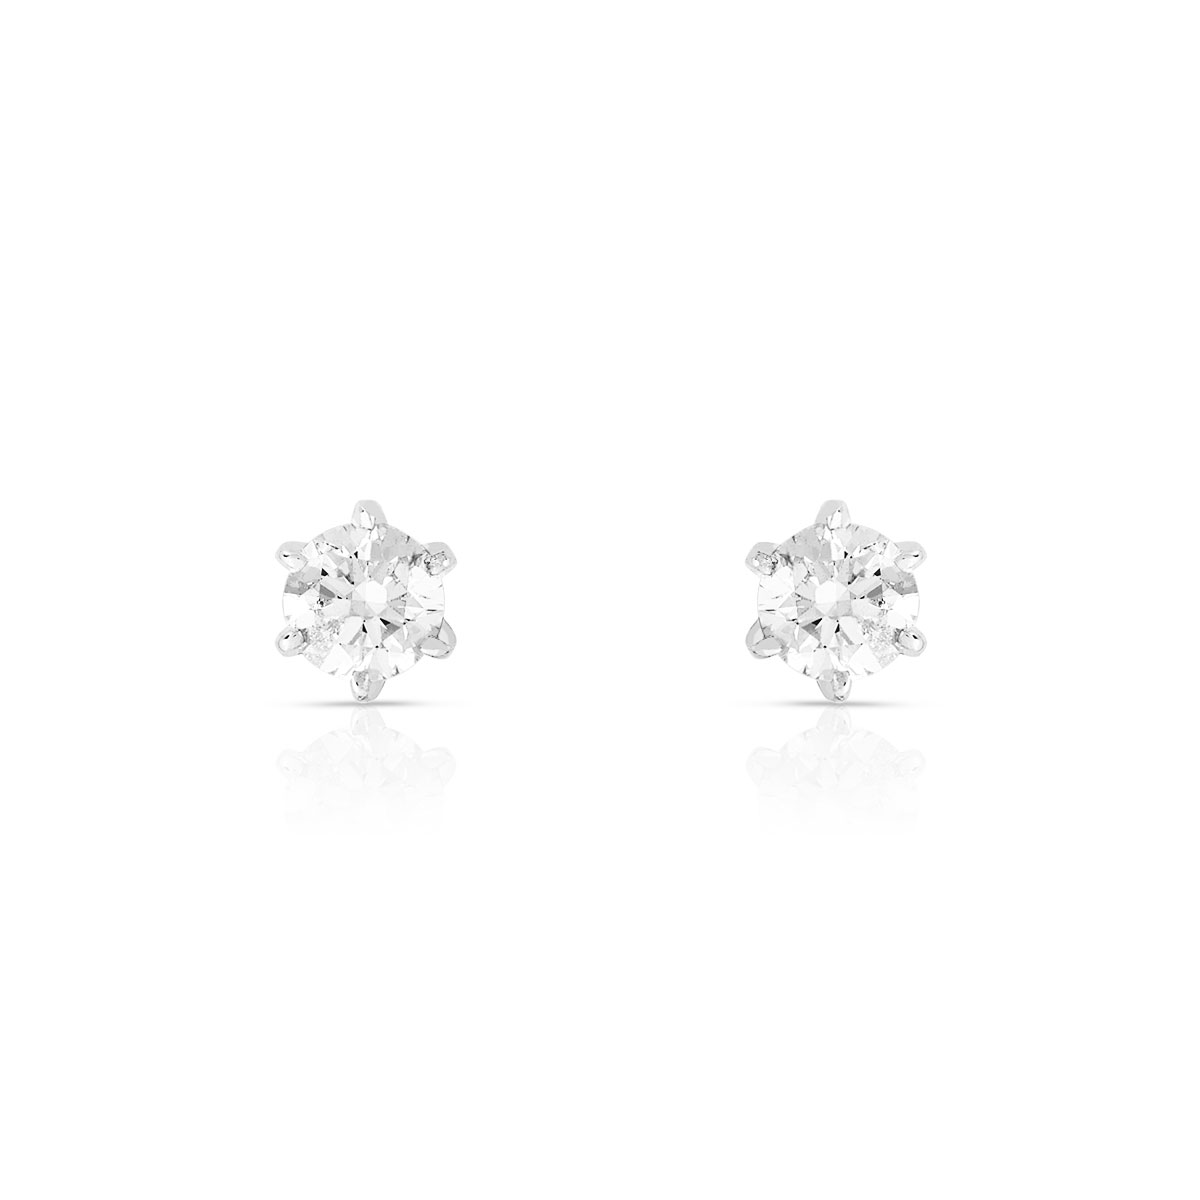 Boucles d'oreilles or 750 blanc diamants synthétiques 0.60 carat